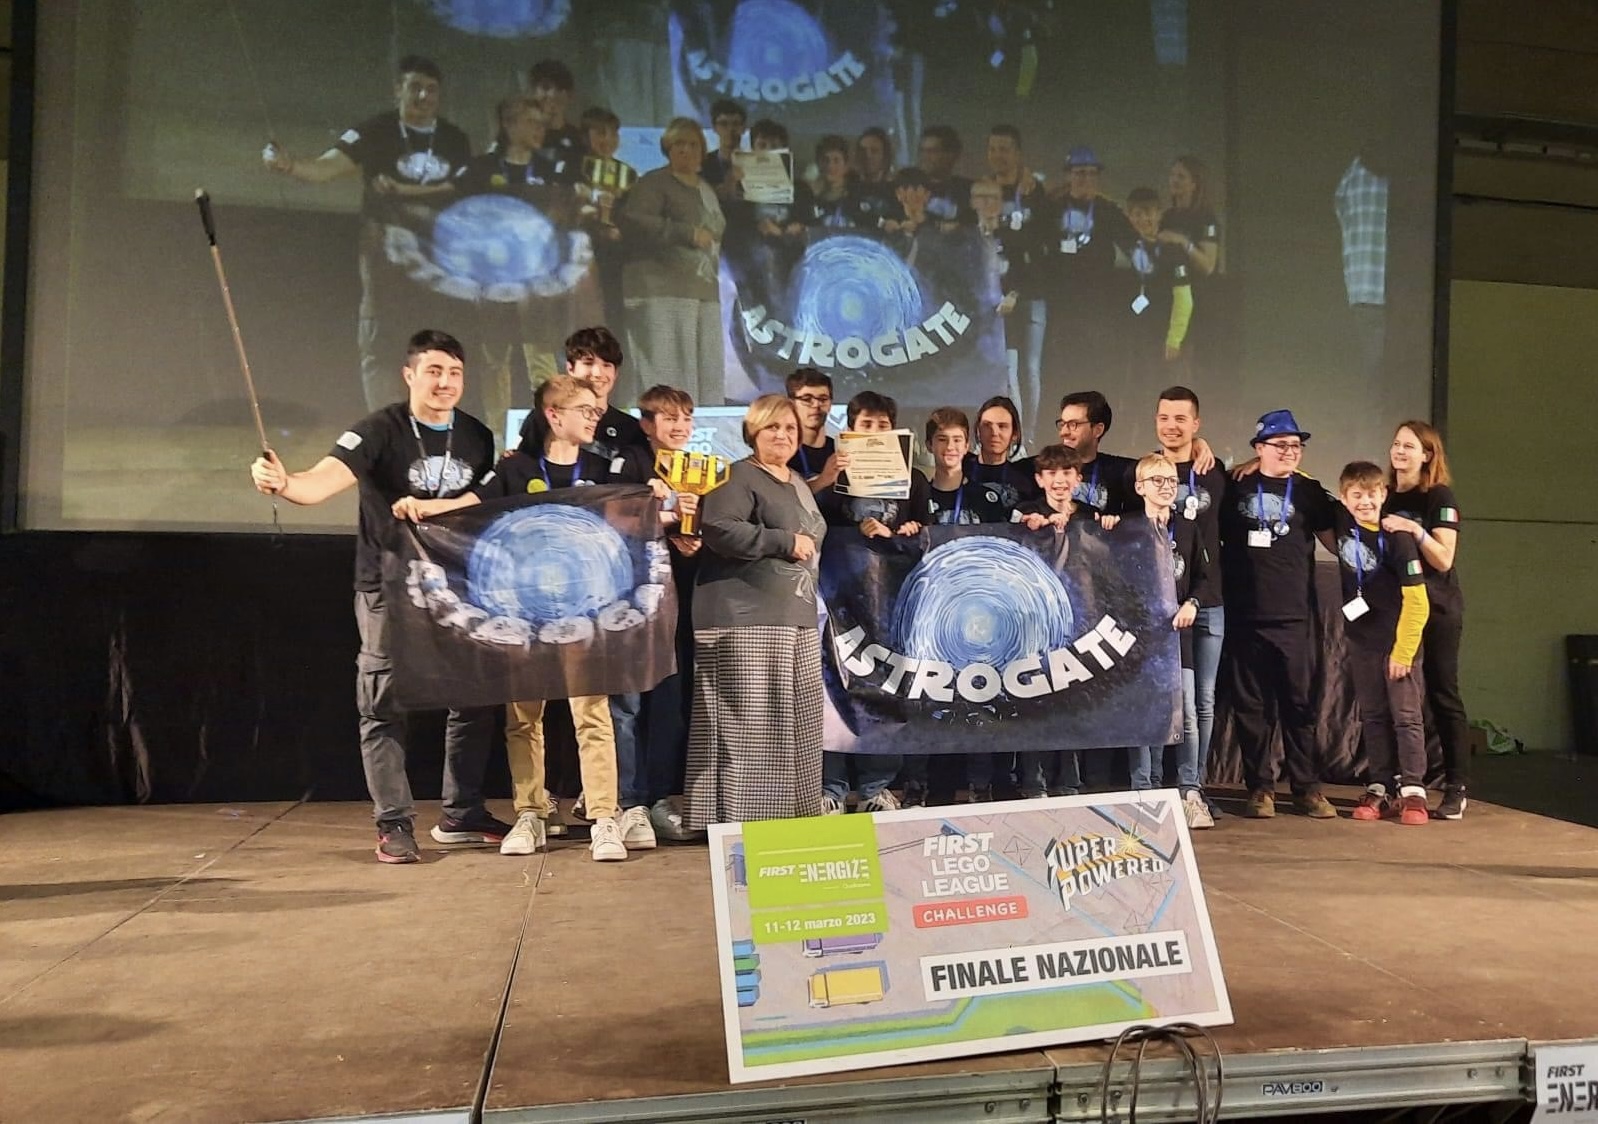 Astrogate - Piacenza finali Nazionali 2023 - Premiazione